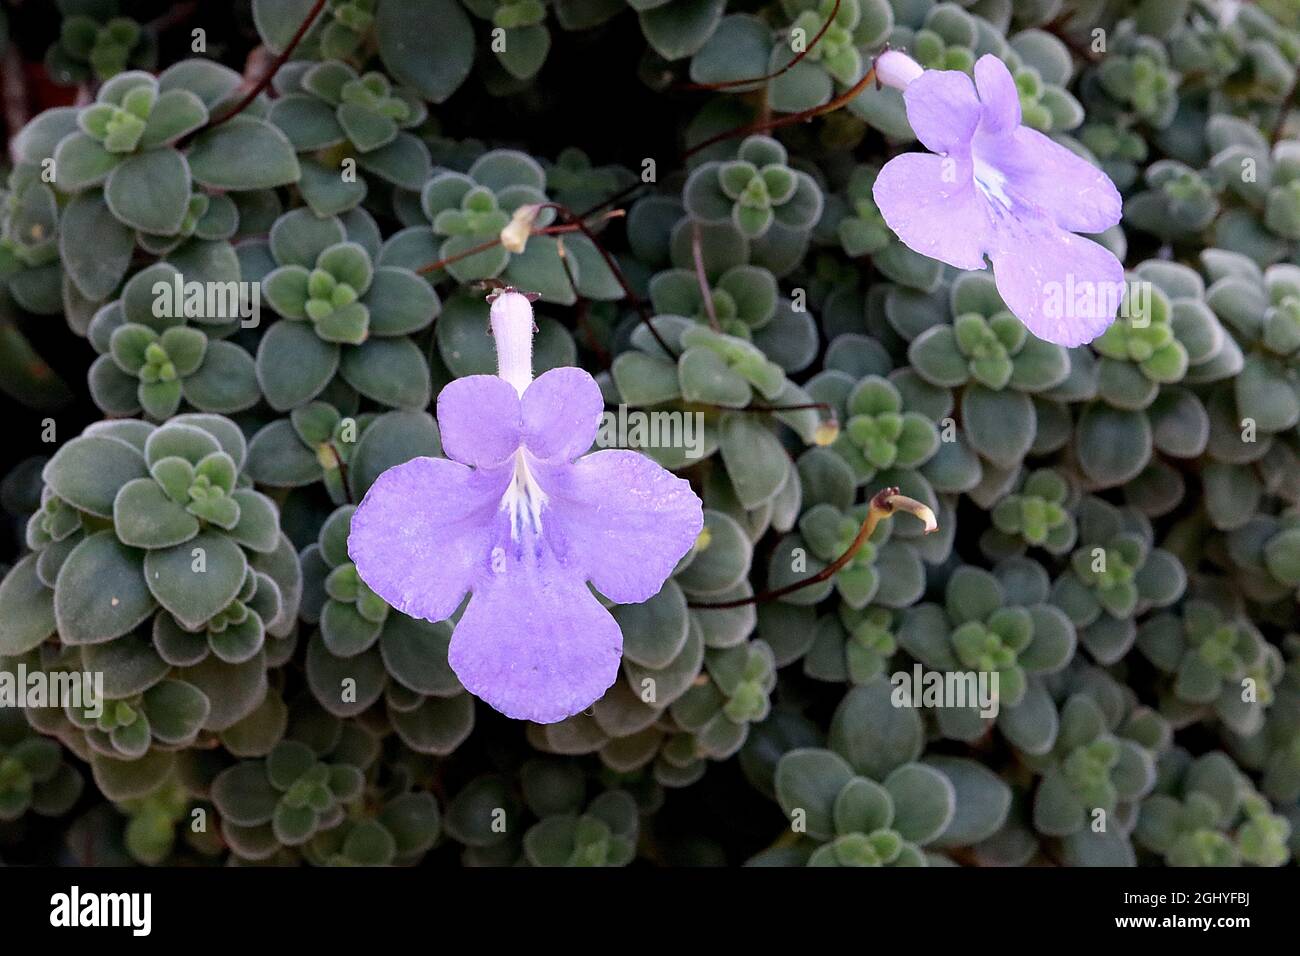 Streptocarpus saxorum falso violeta africano – flores en forma de embudo malva y pequeñas hojas carnosas de color verde oscuro ovado, agosto, Inglaterra, Reino Unido Foto de stock